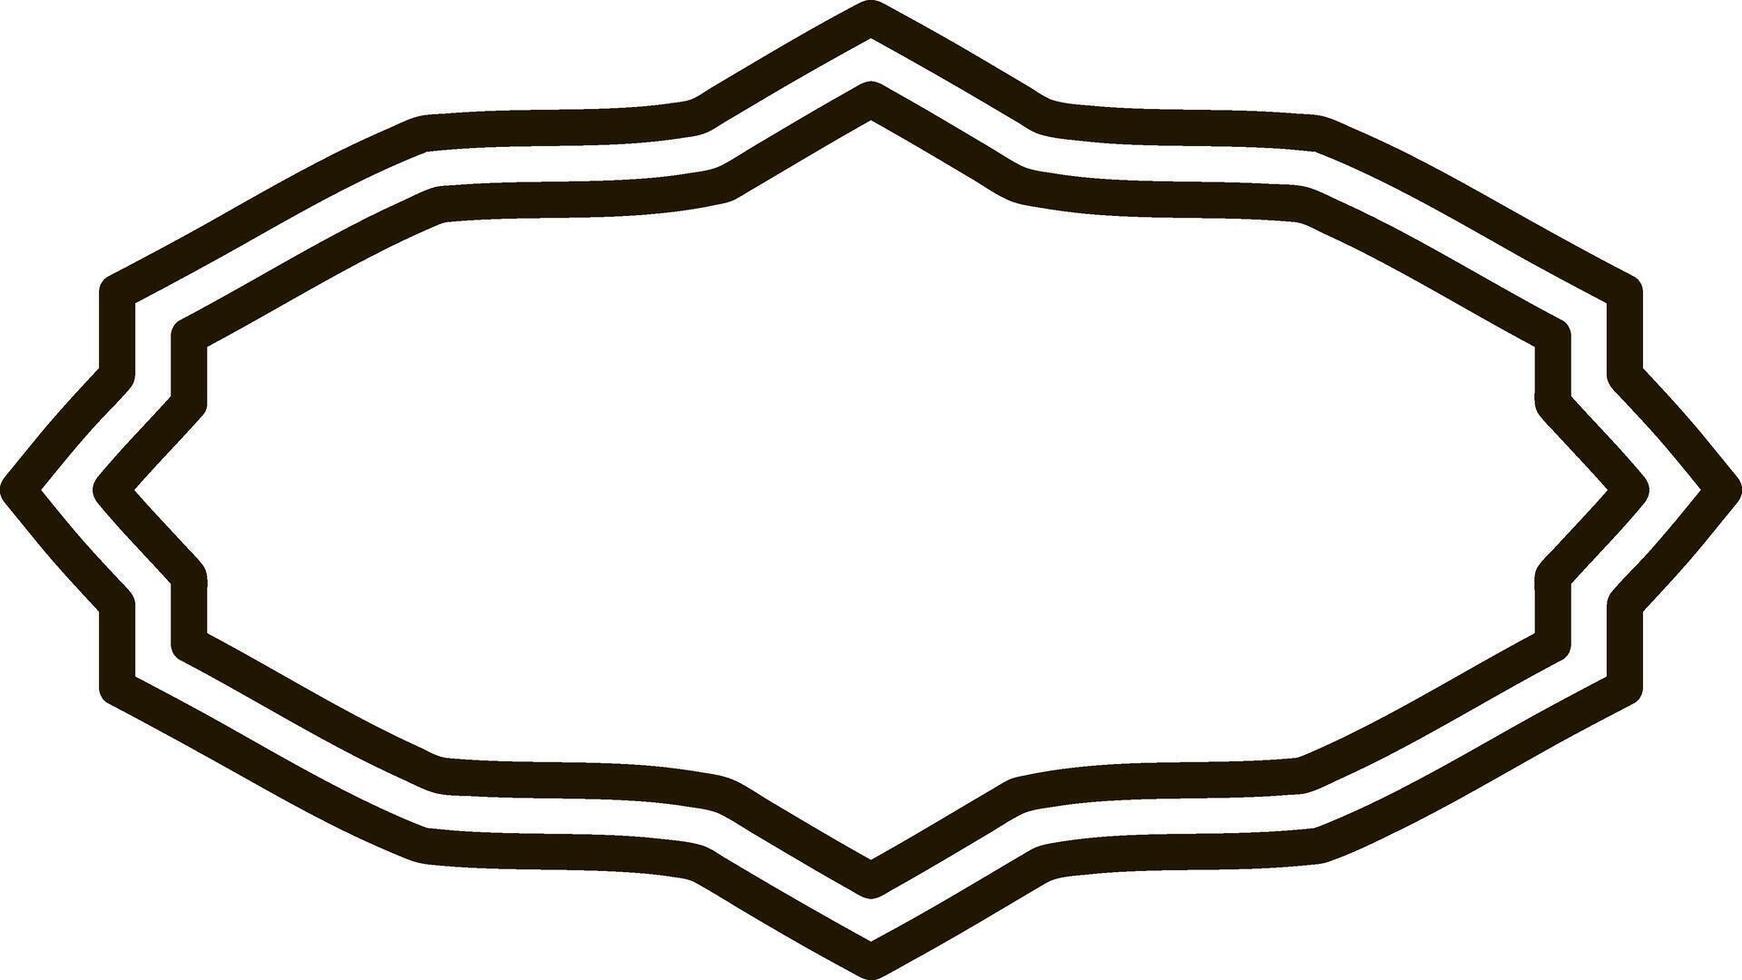 Sketch badge icon Frame border vector